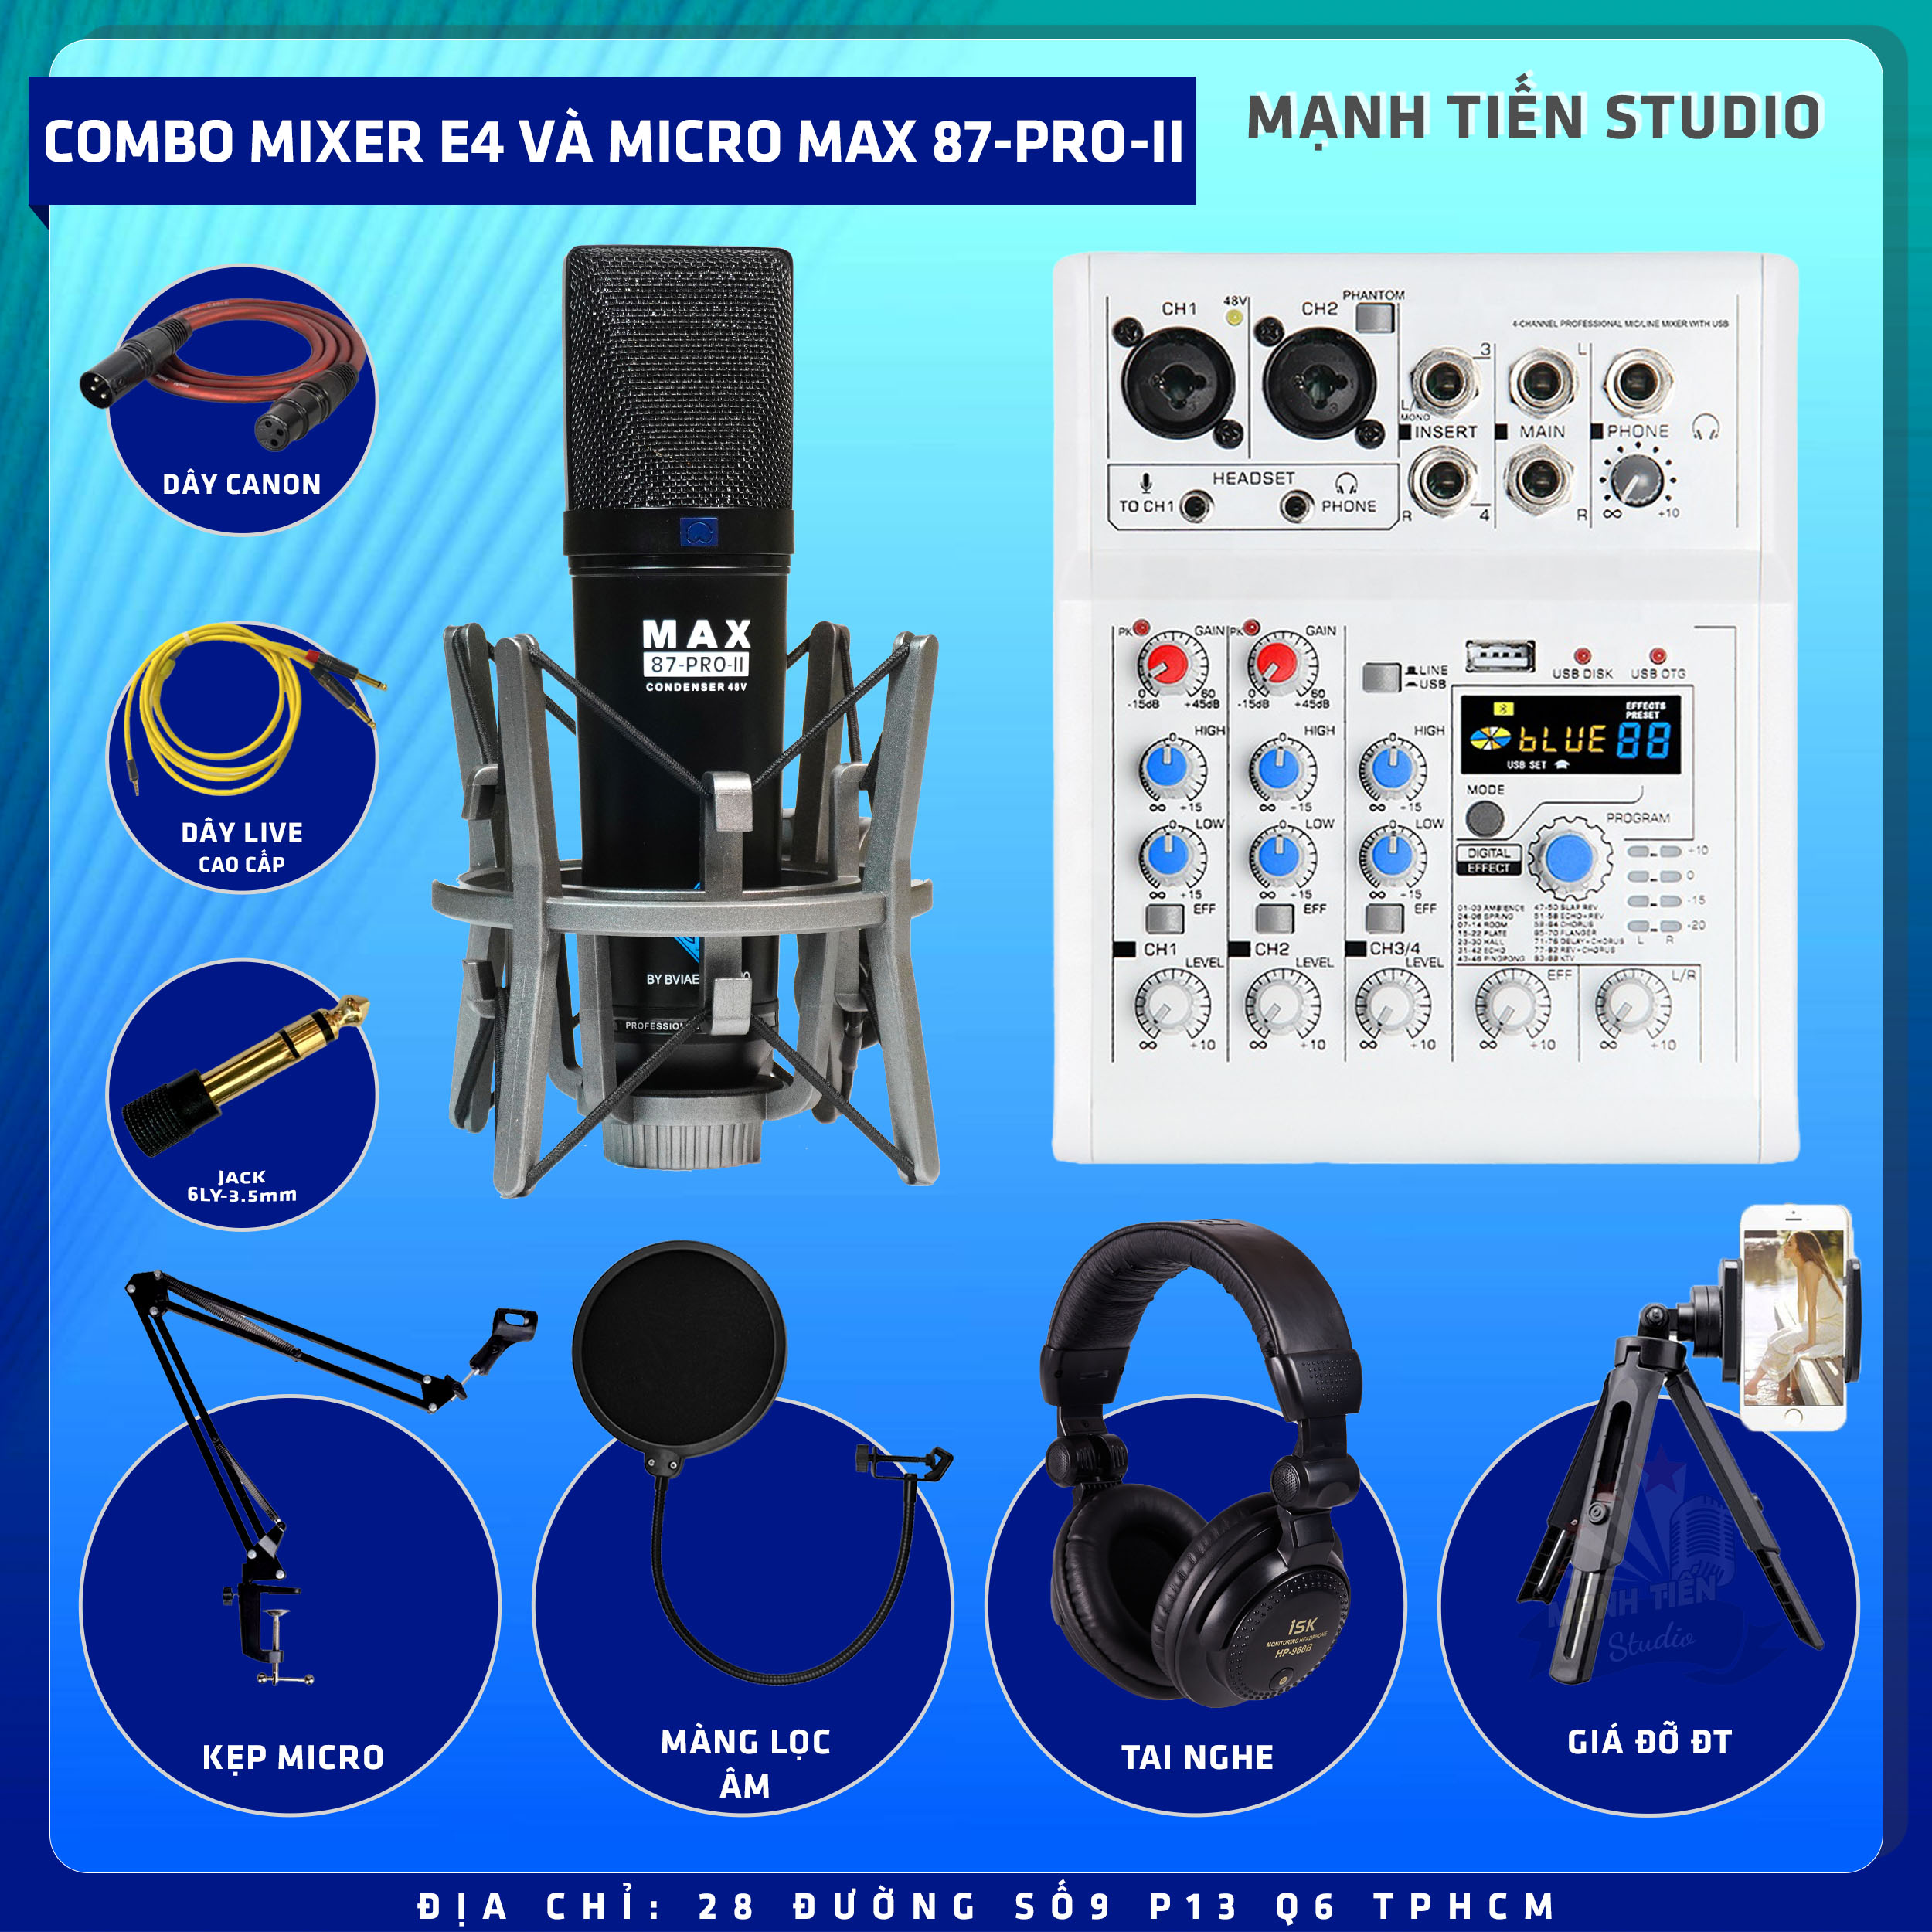 Combo thu âm, livestream Micro Max 87-Pro-II 2022, Mixer E4 - Kèm full phụ kiện kẹp micro, màng lọc, tai nghe, dây canon, dây livestream, giá đỡ ĐT - Hỗ trợ thu âm, karaoke online chuyên nghiệp - Hàng nhập khẩu